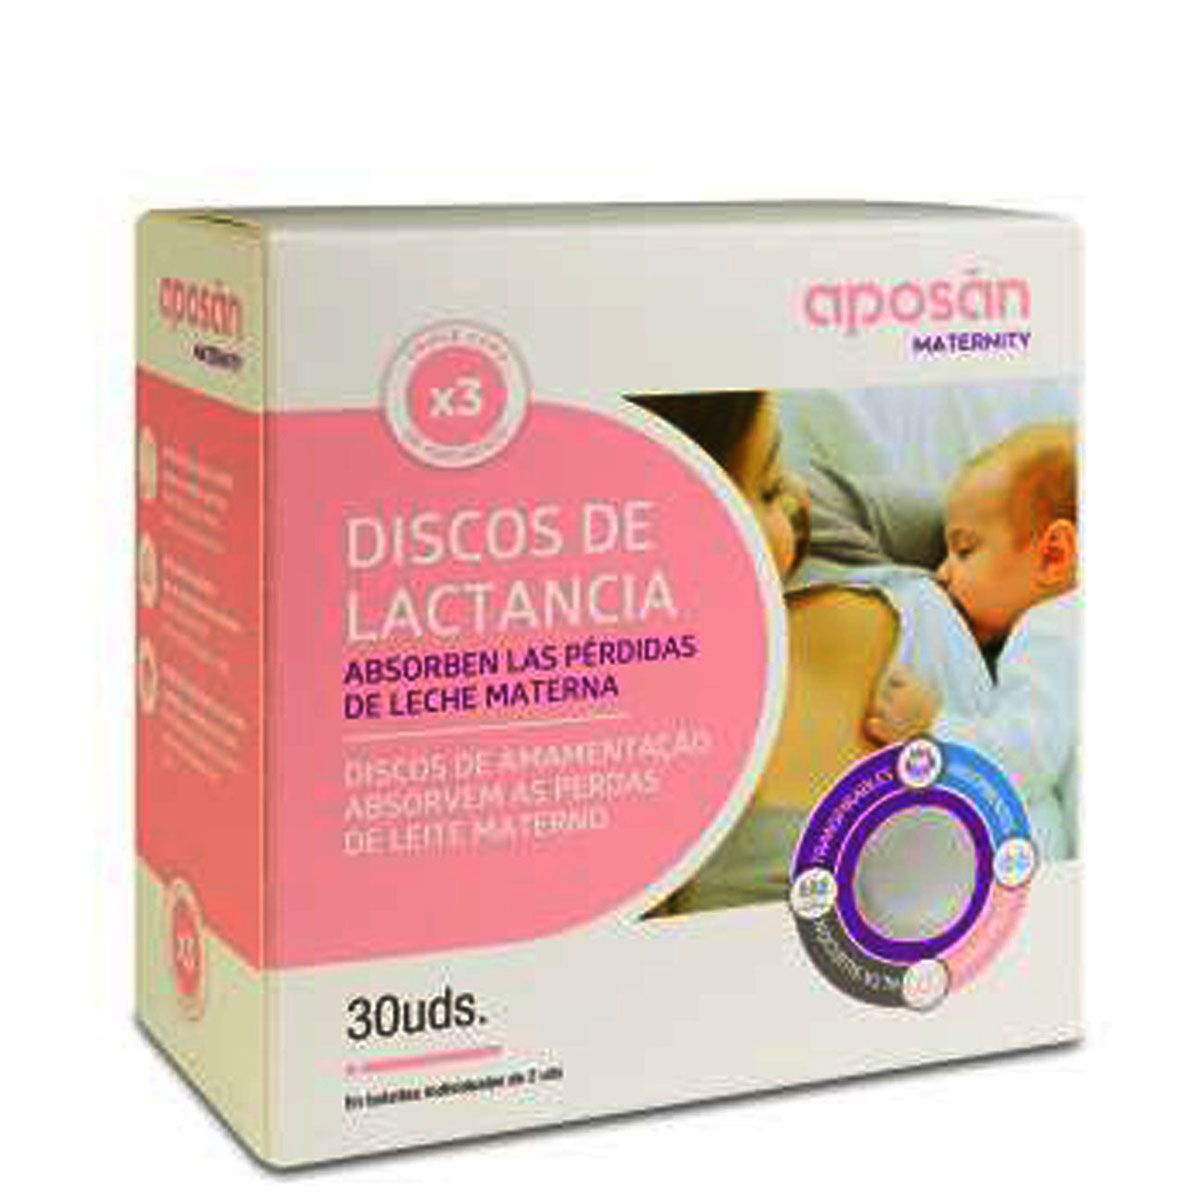 DISCOS LACTANCIA - Tanana Crafts BCN - maternidad sostenible